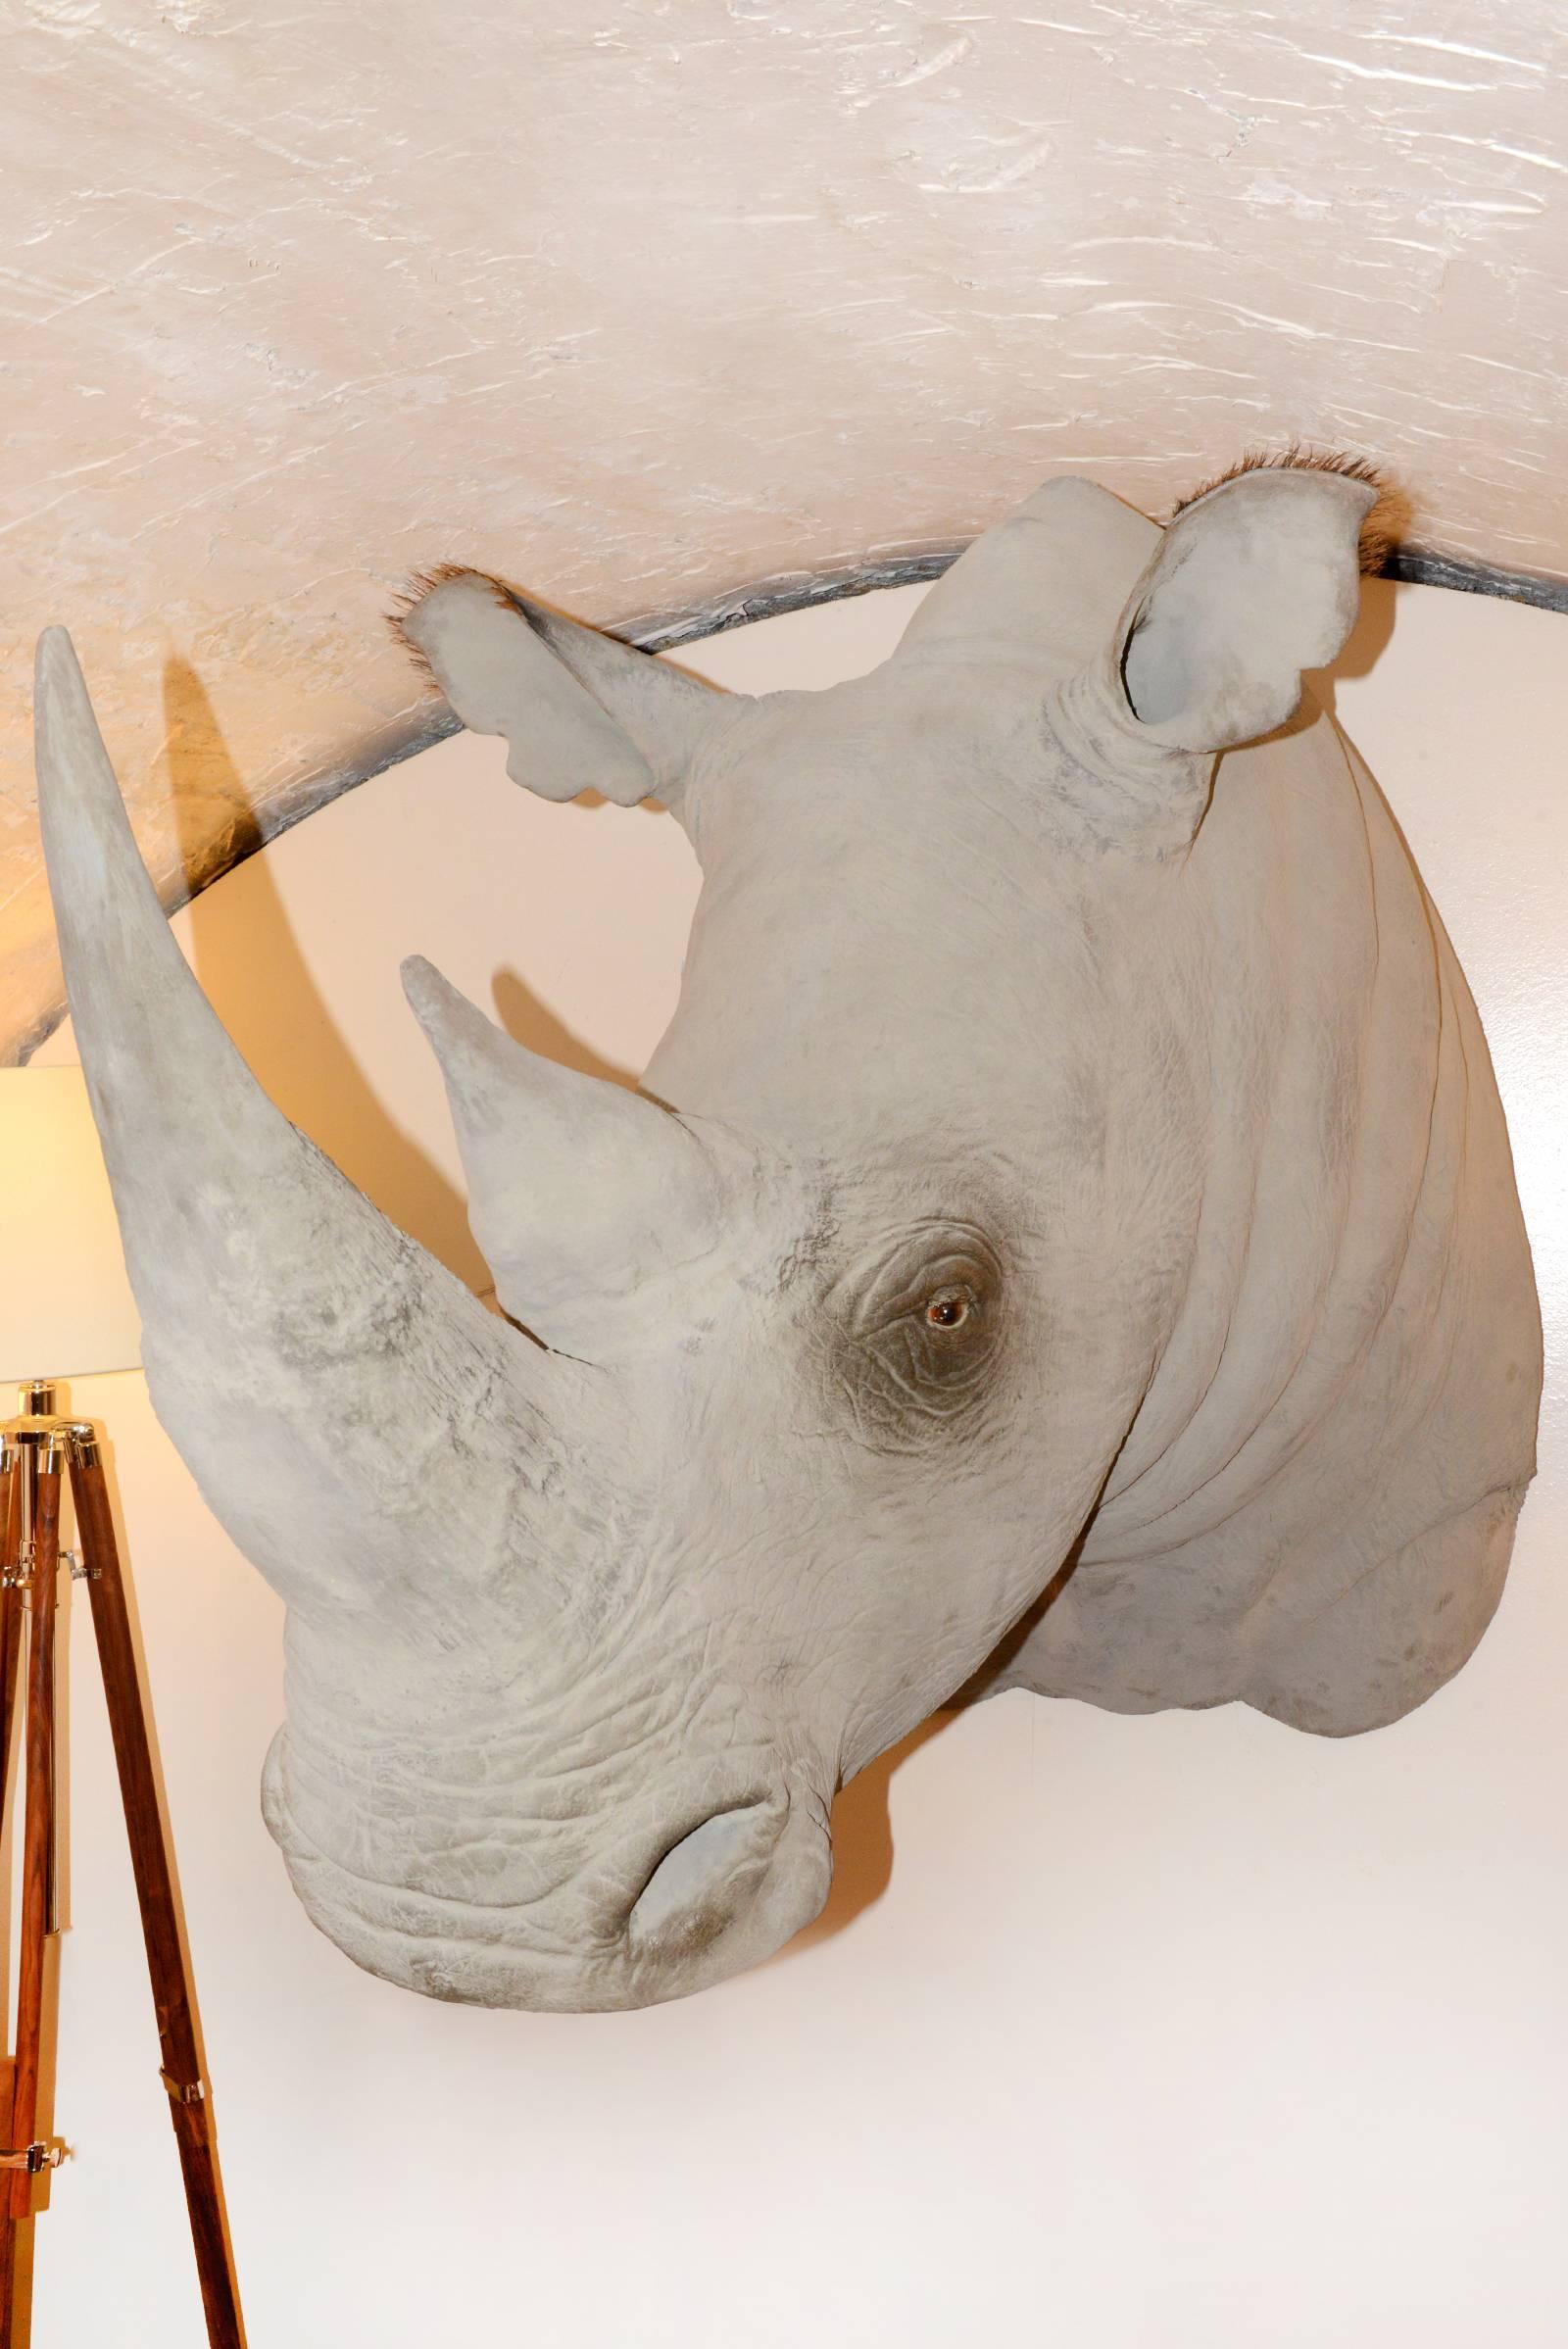 Rhinoceros-Kopf-Skulptur aus Fiberglas mit außergewöhnlichem Finish (21. Jahrhundert und zeitgenössisch)